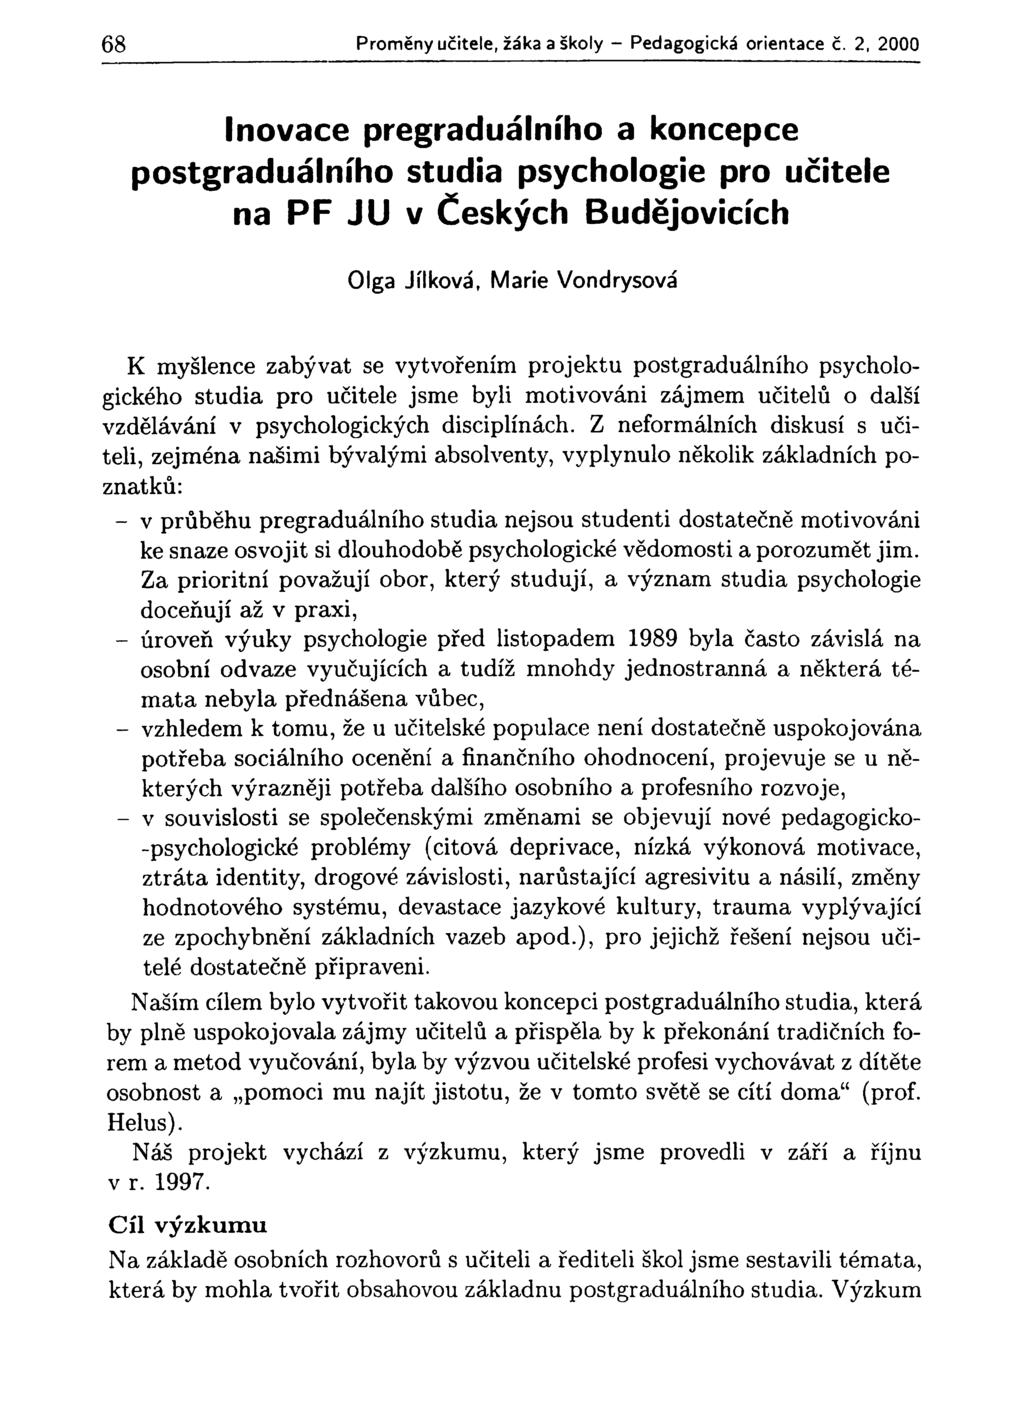 68 Proměny učitele, žáka a školy - Pedagogická orientace č.